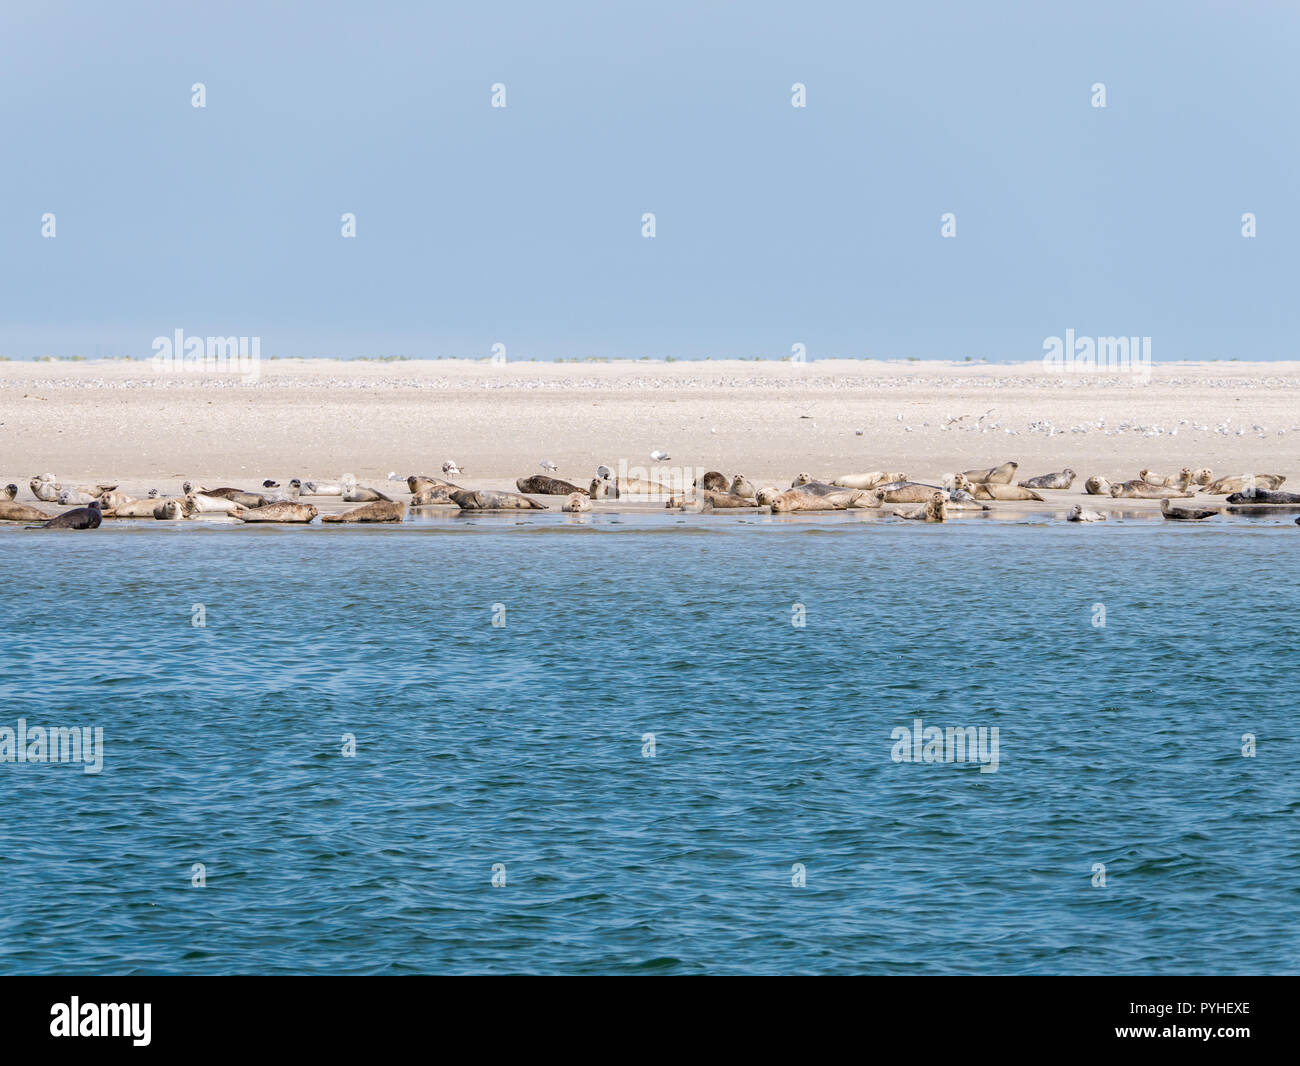 Les phoques communs et gris se reposant sur le sable appartements de RIF dans les marées, la mer de Wadden Pays-Bas Banque D'Images